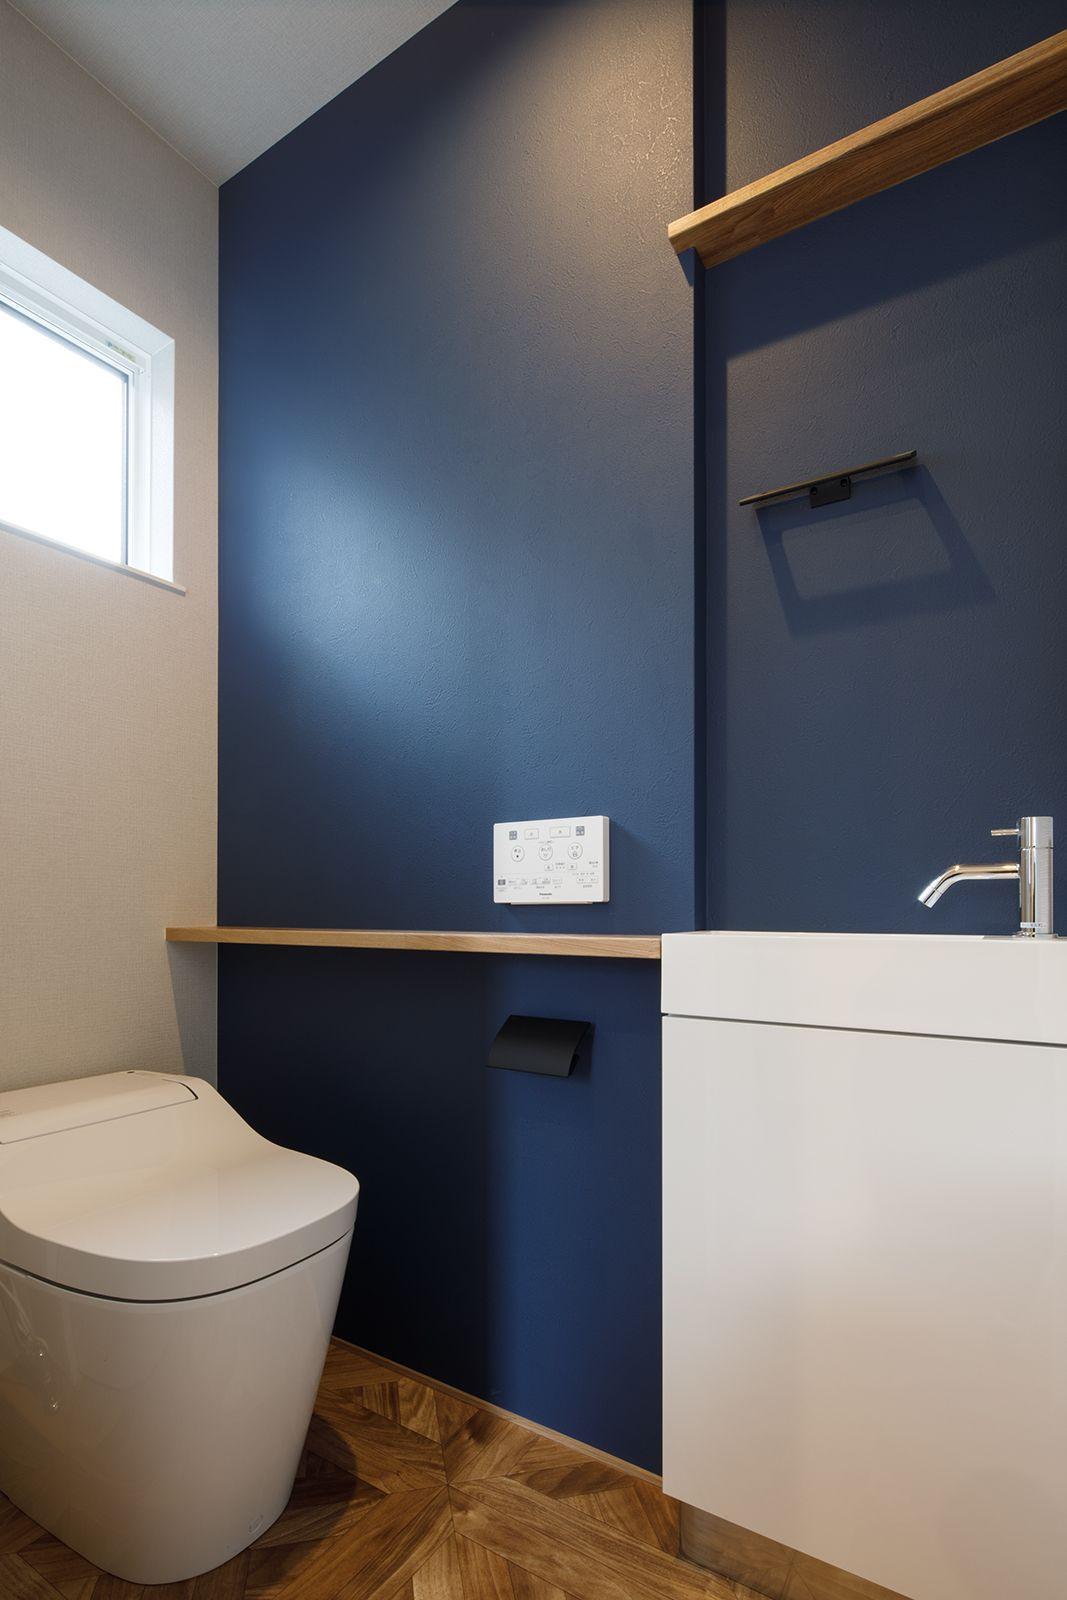 シンプル・ナチュラル・ヴィンテージ・インダストリアル・ブルックリンスタイルなトイレの実例写真